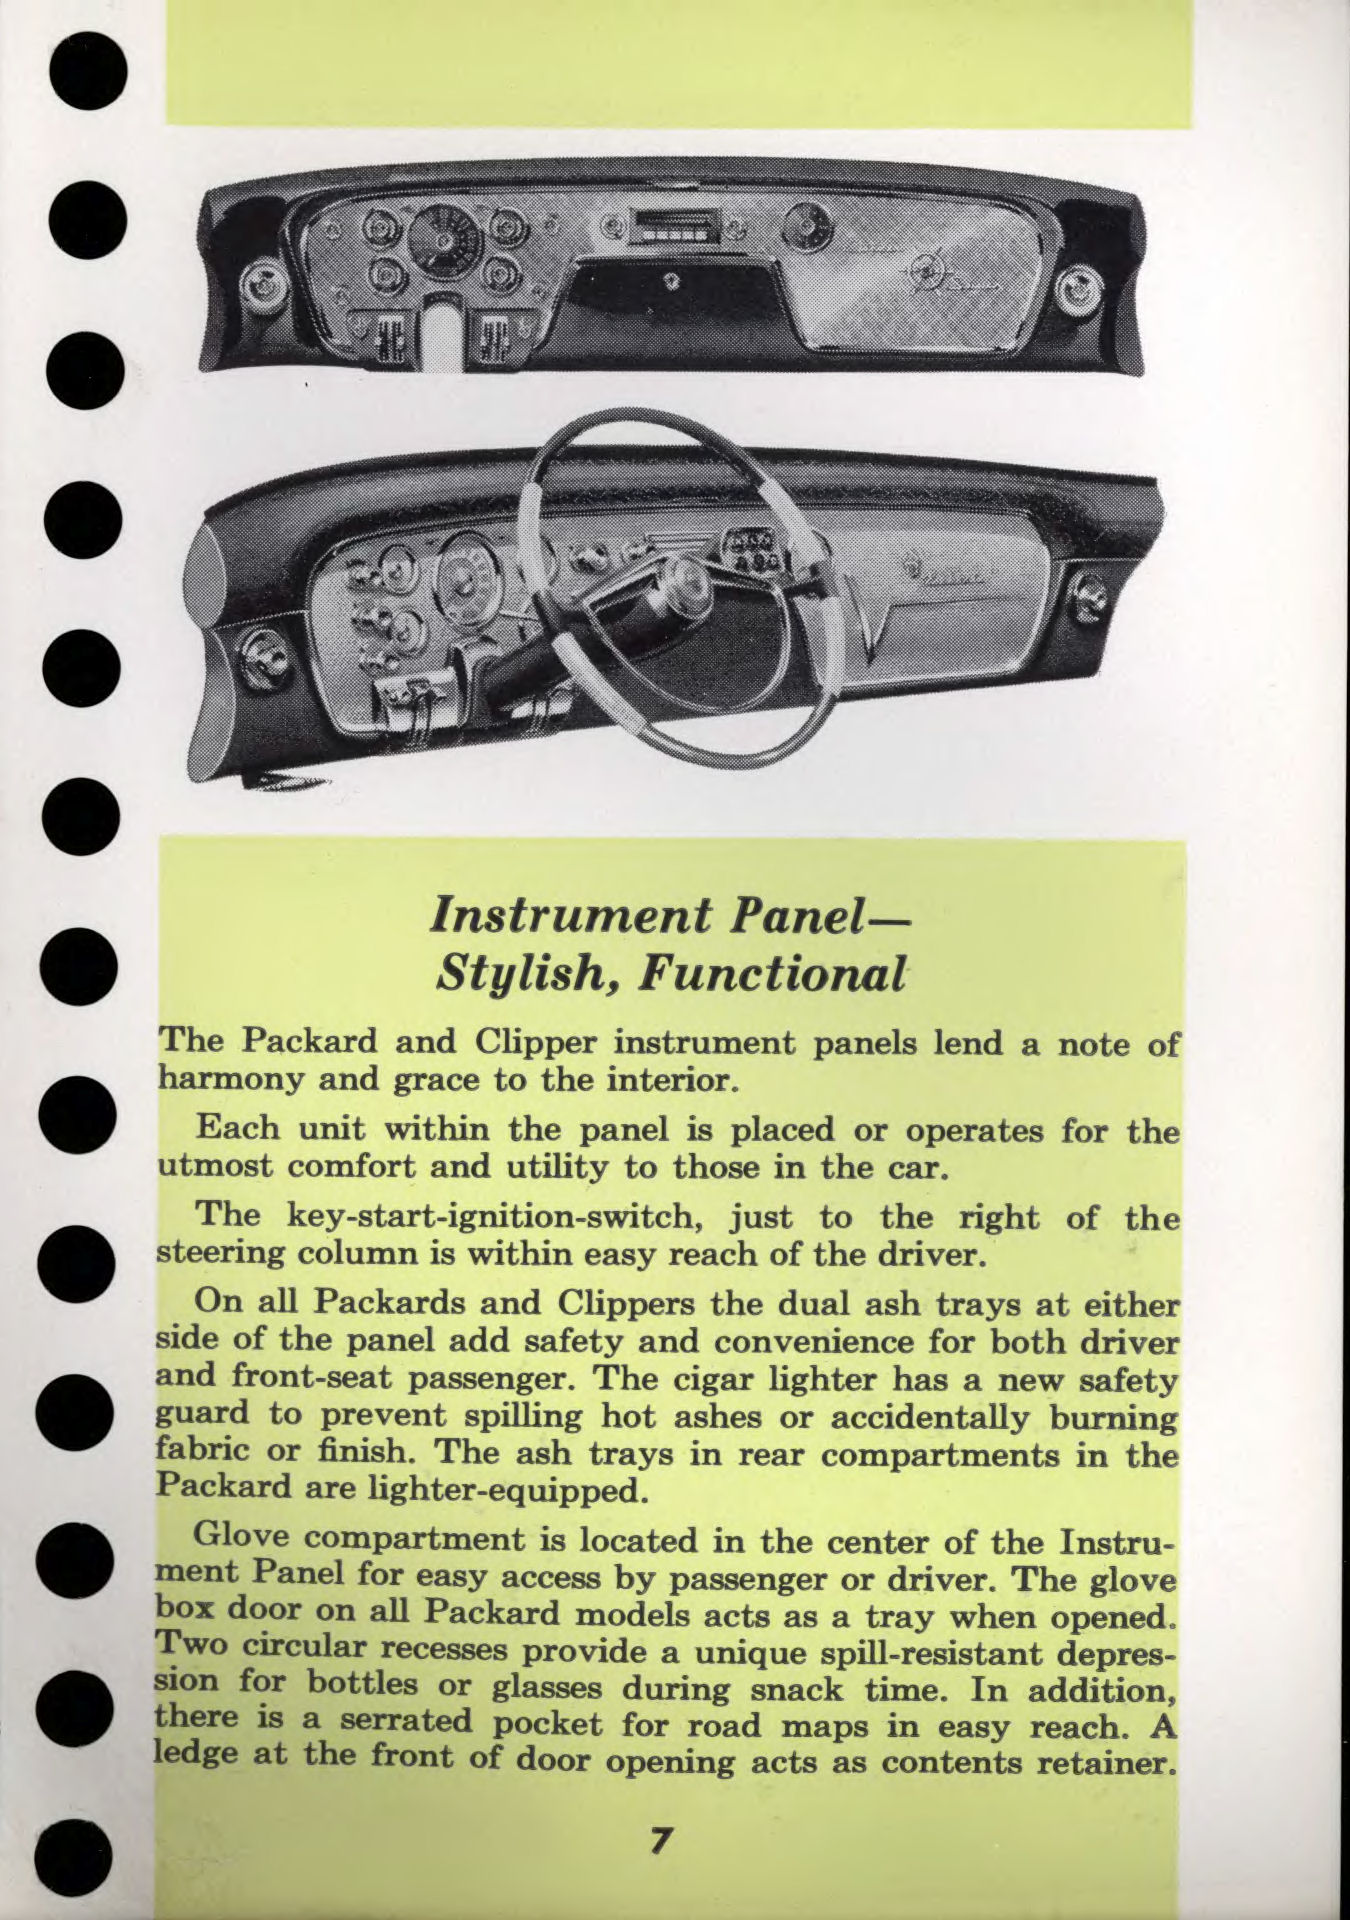 1956 Packard Data Book-g07